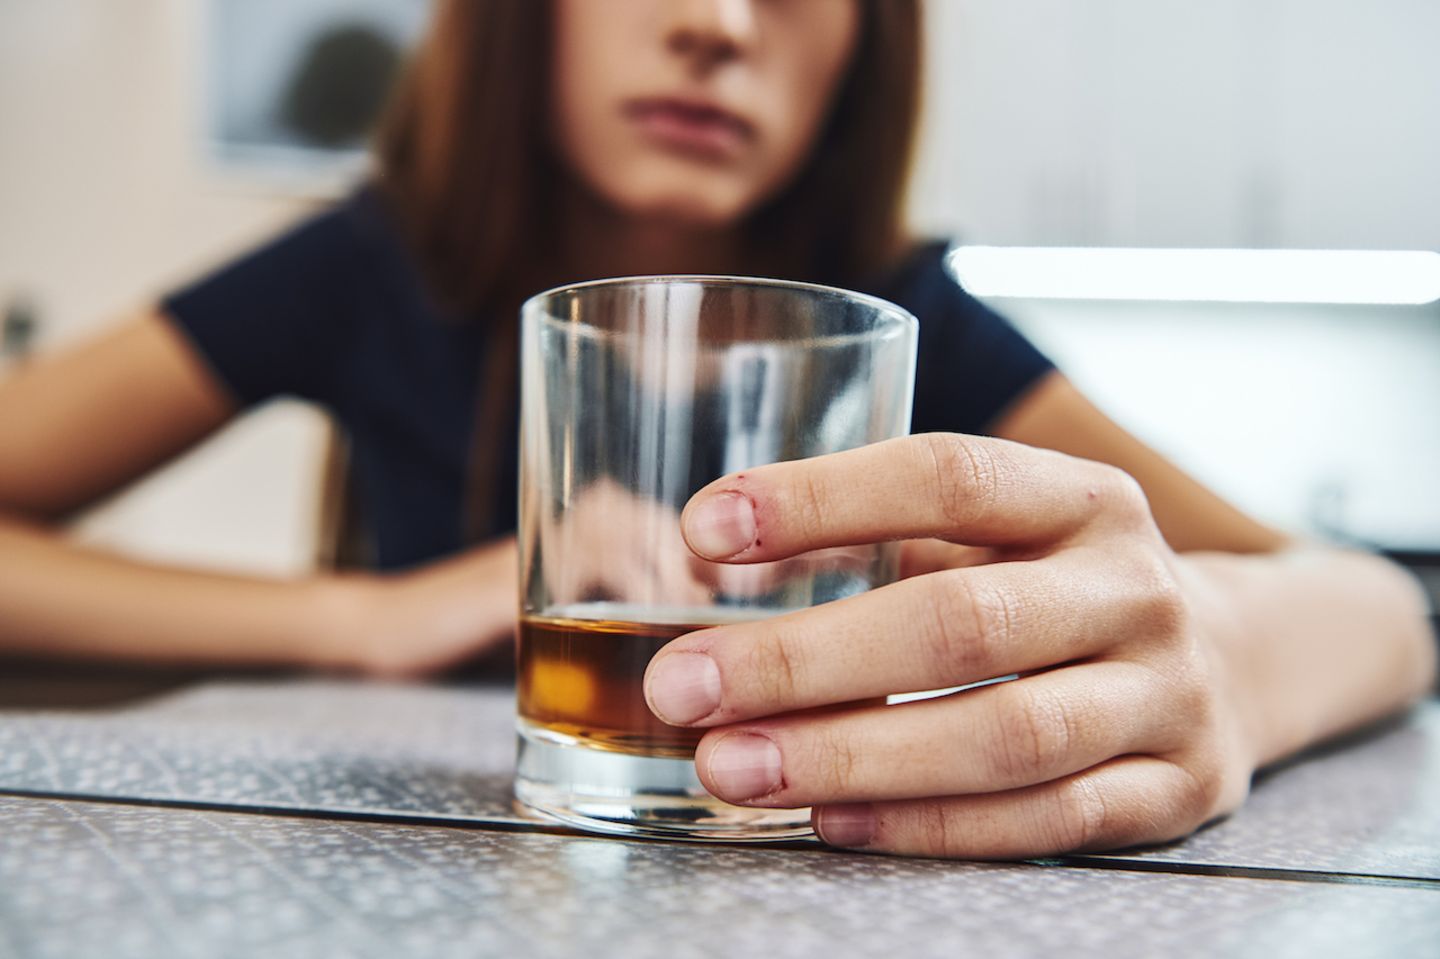 Alkoholismus: "Ich muss mich nicht dafür schämen, aber ich muss ehrlich damit umgehen"